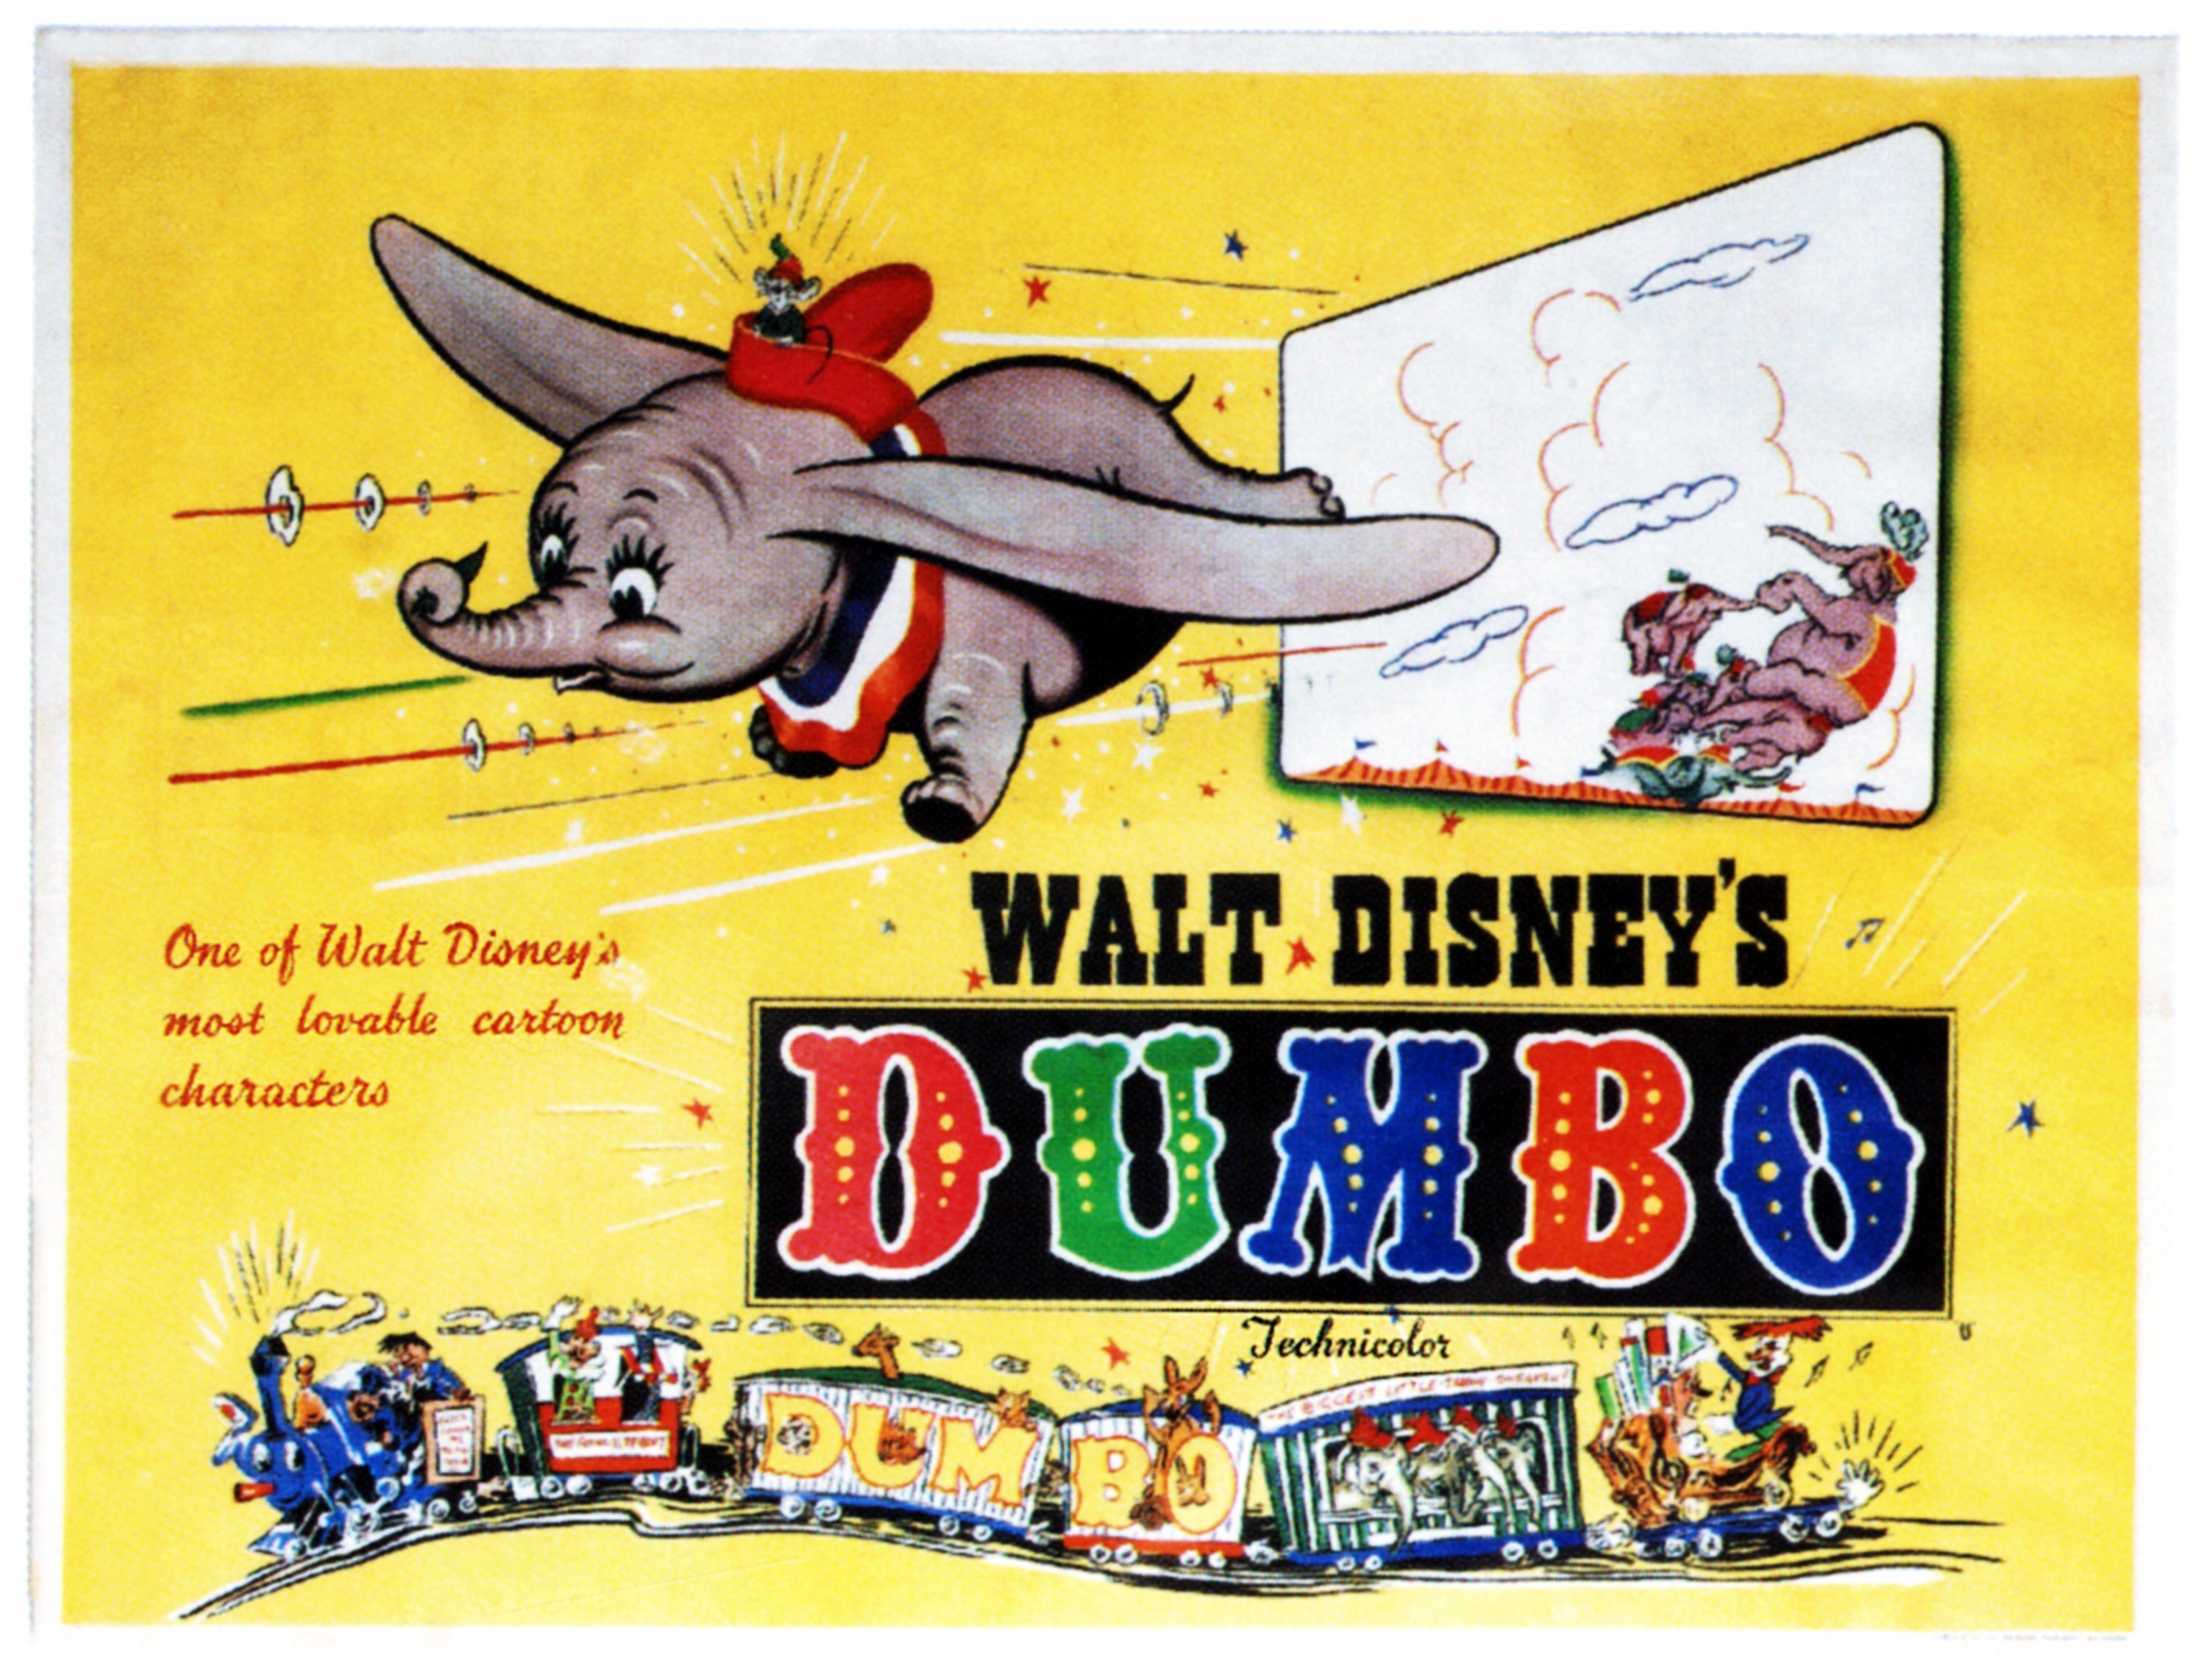 Walt Disney's 'Dumbo' poster, on poster art, 1941